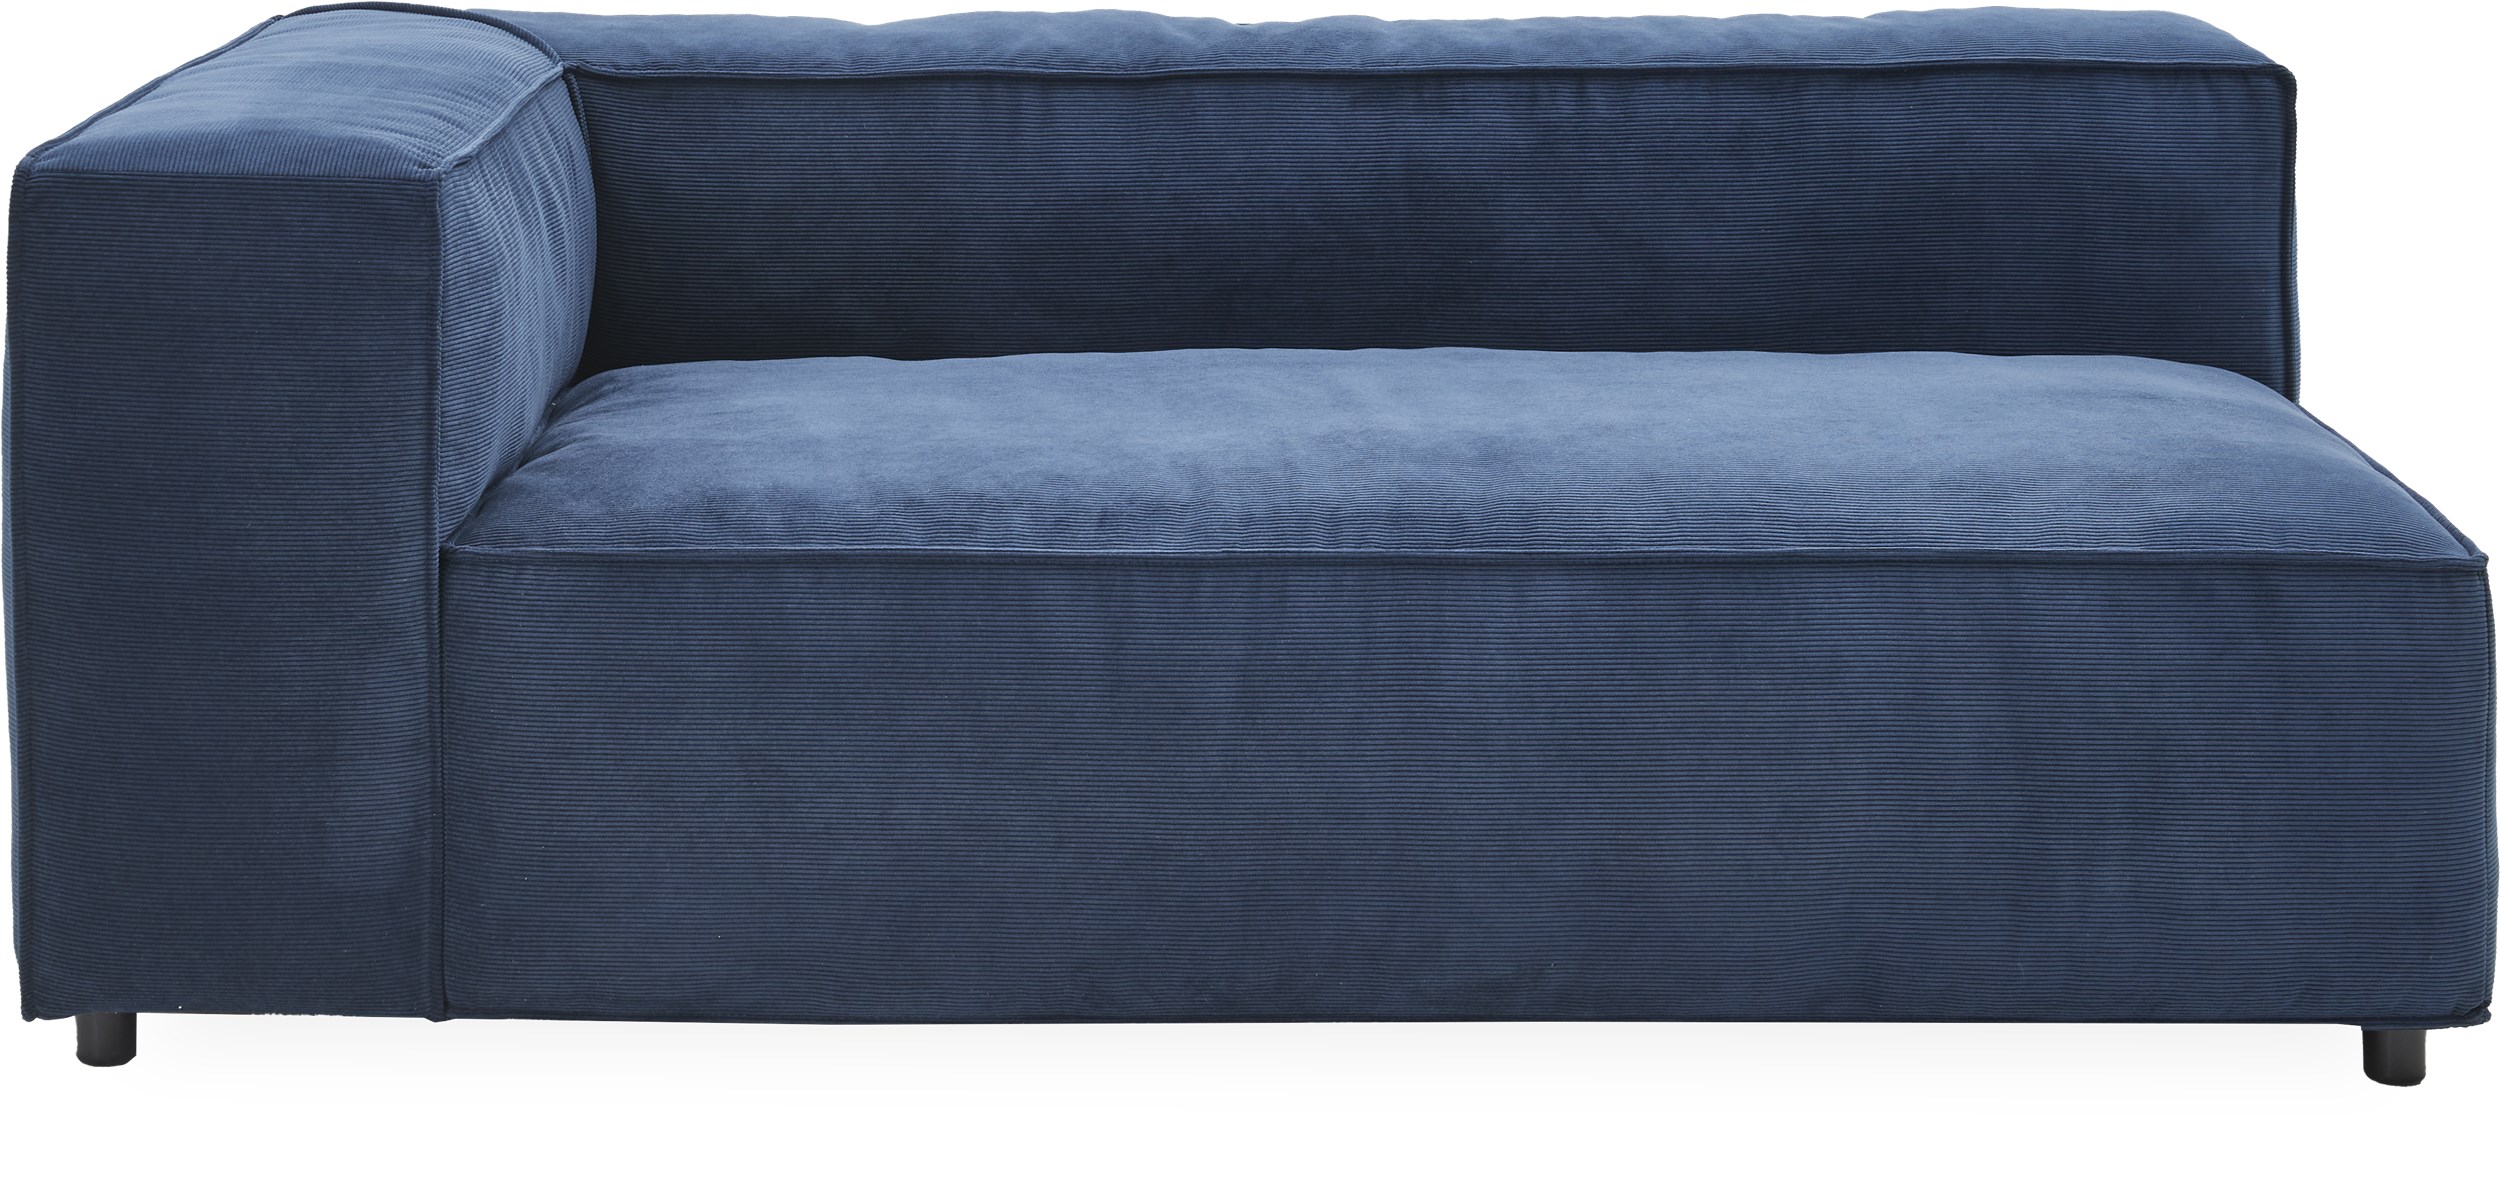 Norstrom Ändmodul - Wave 220 Royal blue textil och ben i svart plast